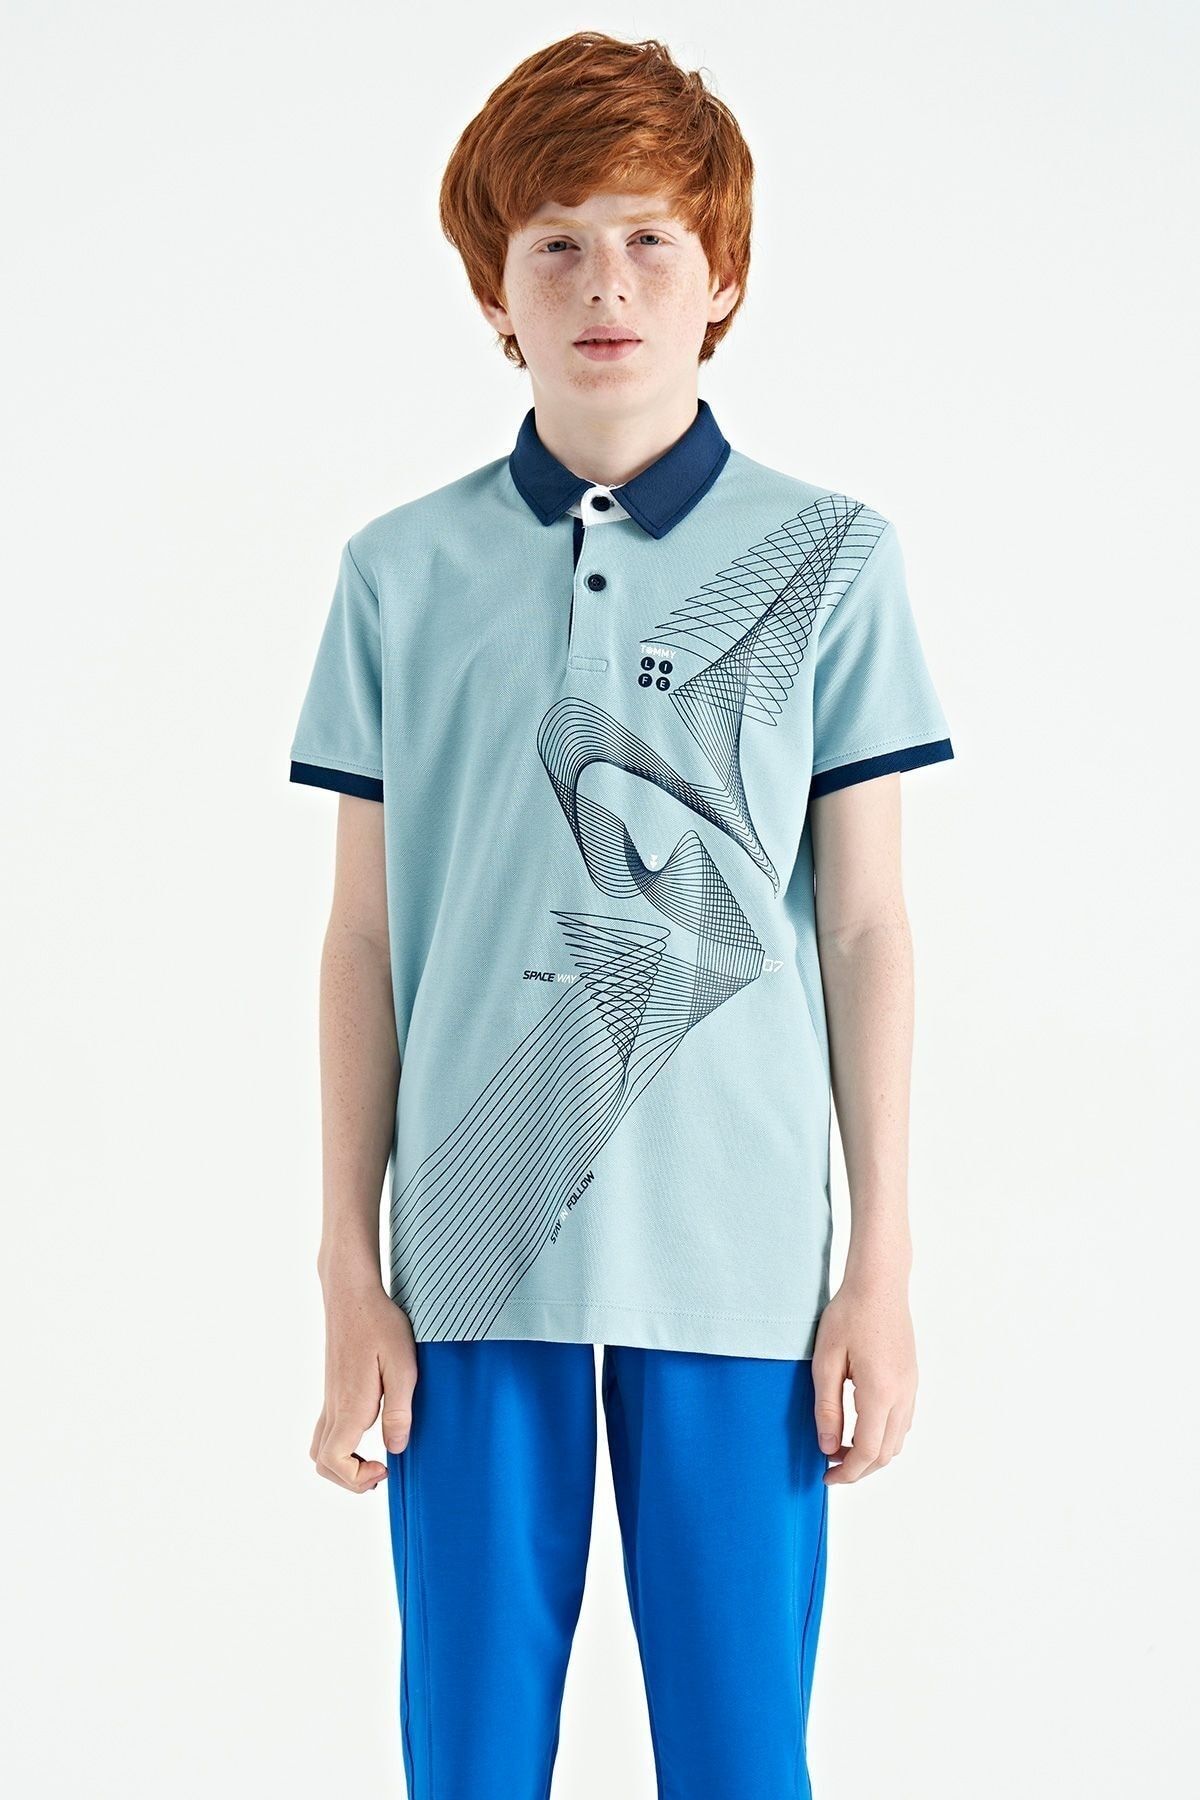 TOMMY LIFE Açık Mavi Baskı Detaylı Standart Kalıp Polo Yaka Erkek Çocuk T-Shirt - 11164